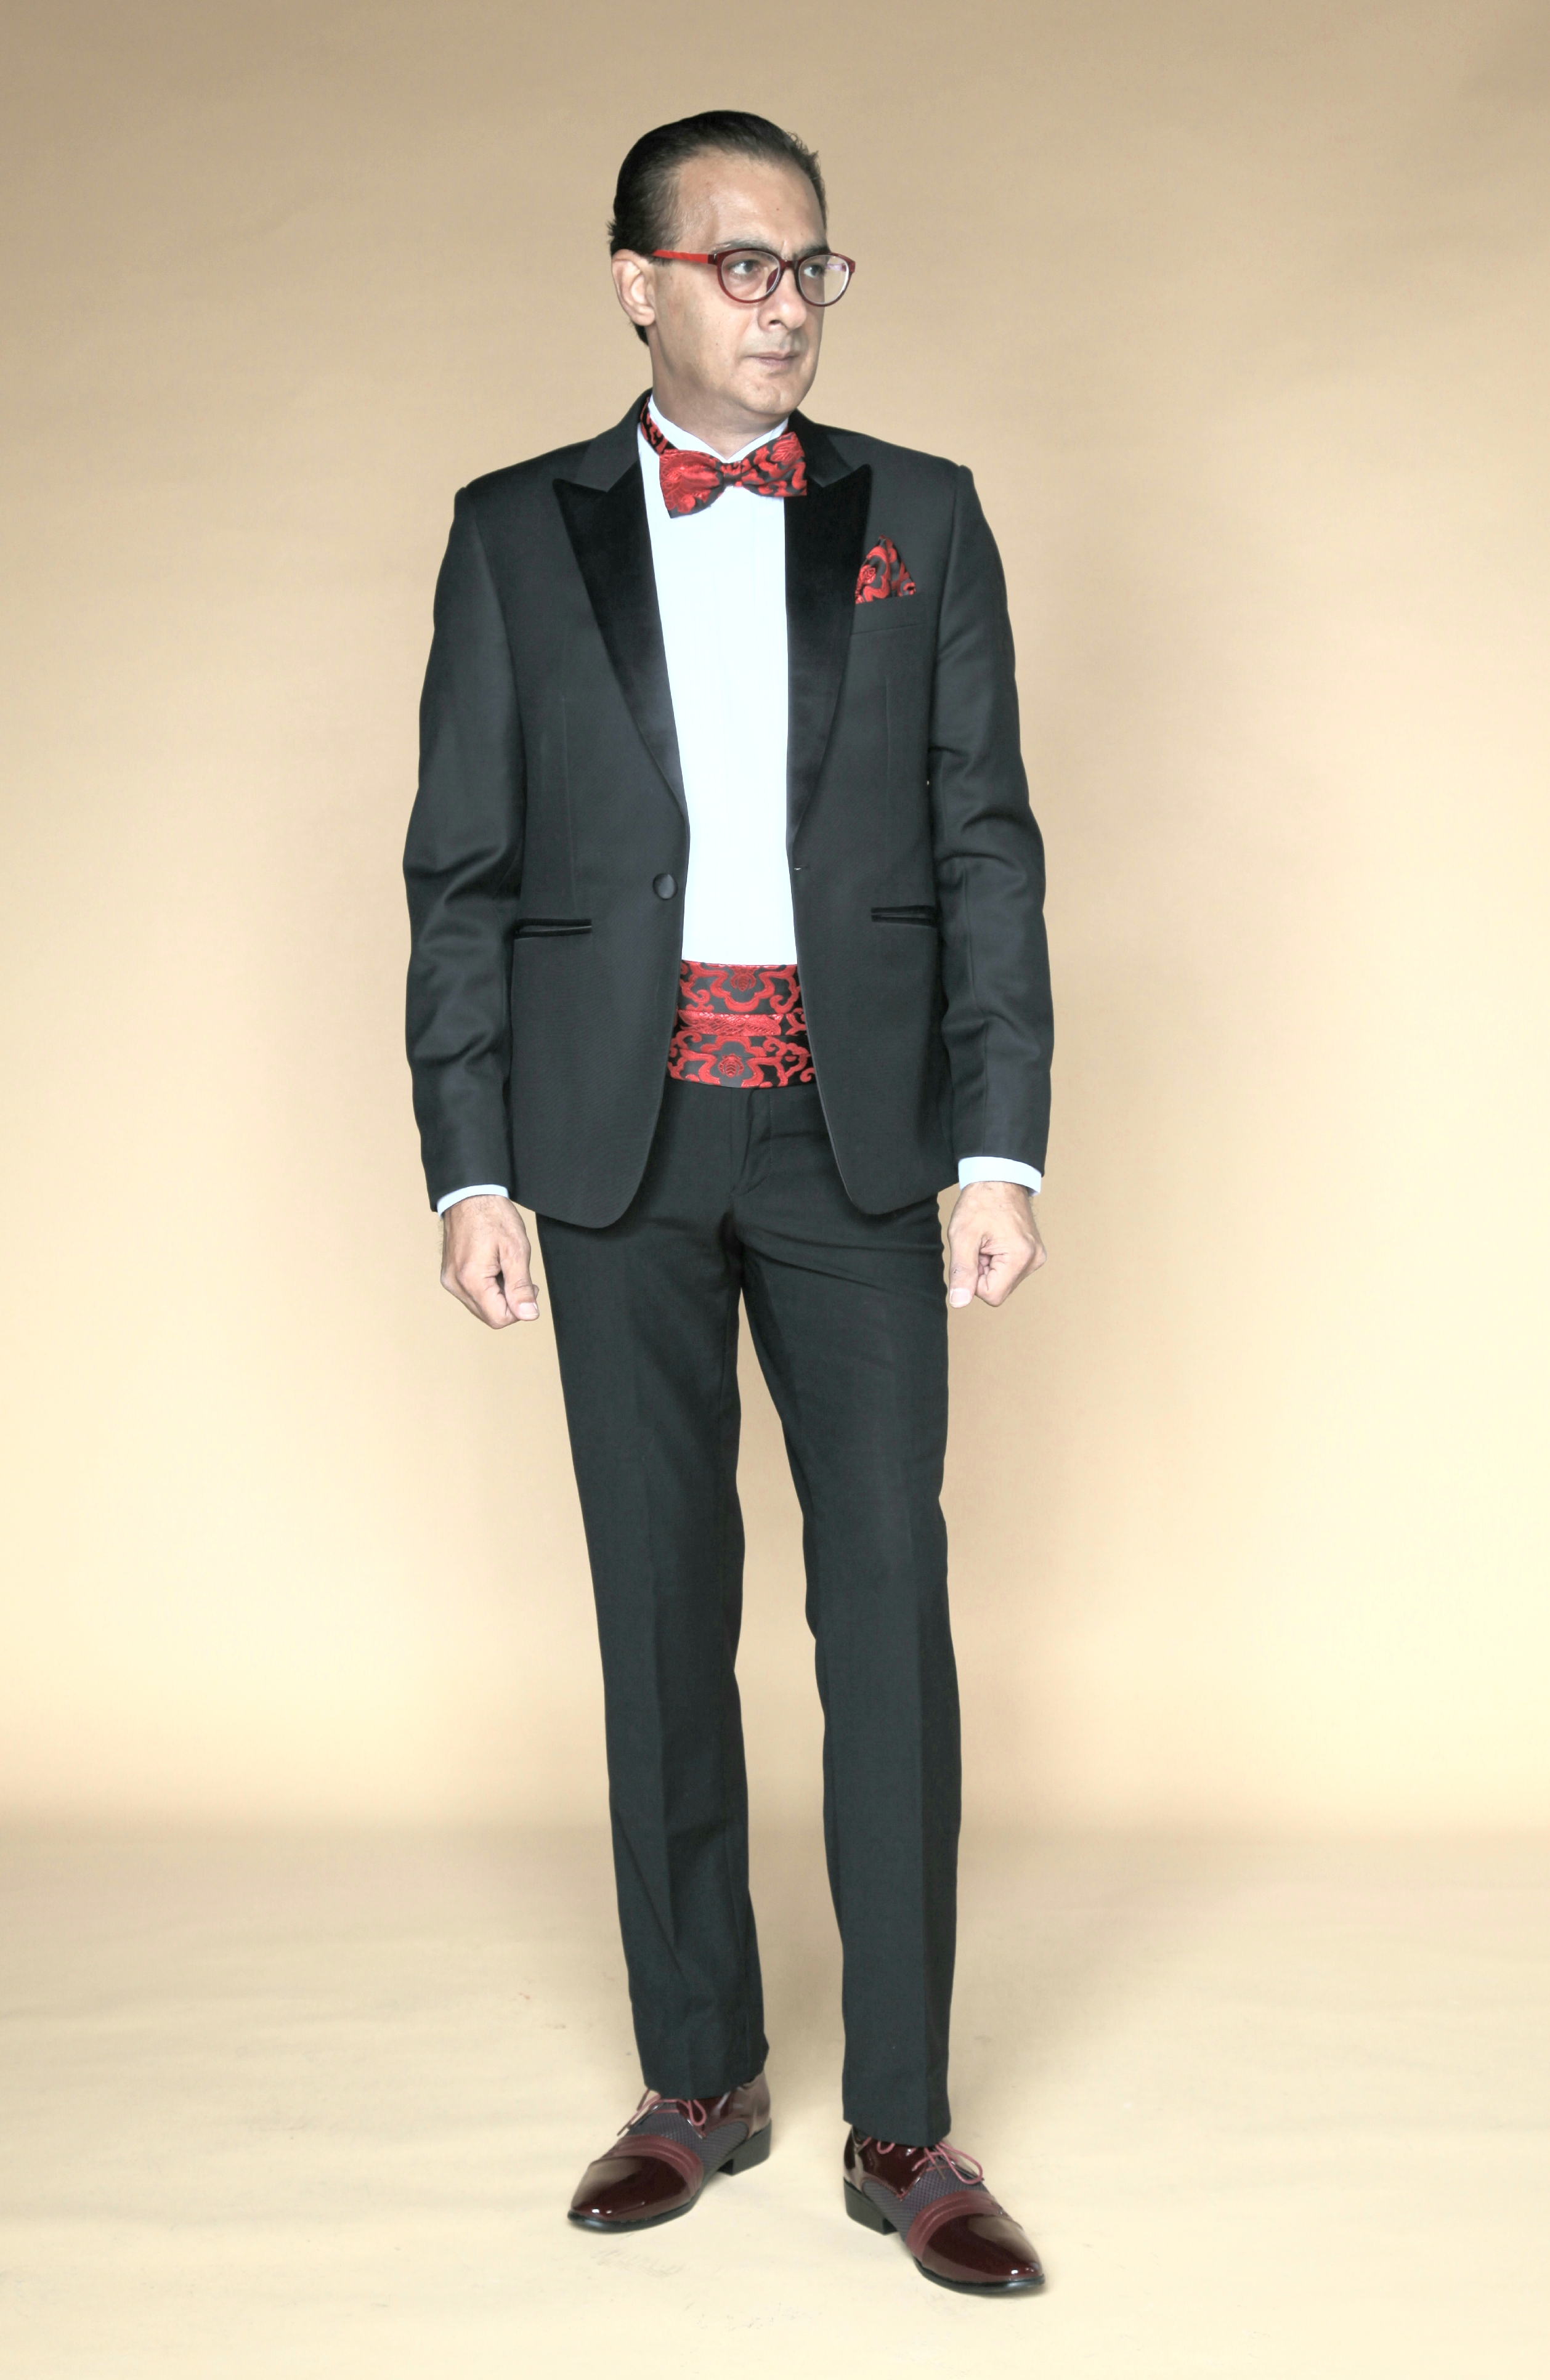 MST-5061-03-rent_rental_hire_tuxedo_suit_black_tie_suit_designer_suits_shop_tailor_tailors_singapore_wedding